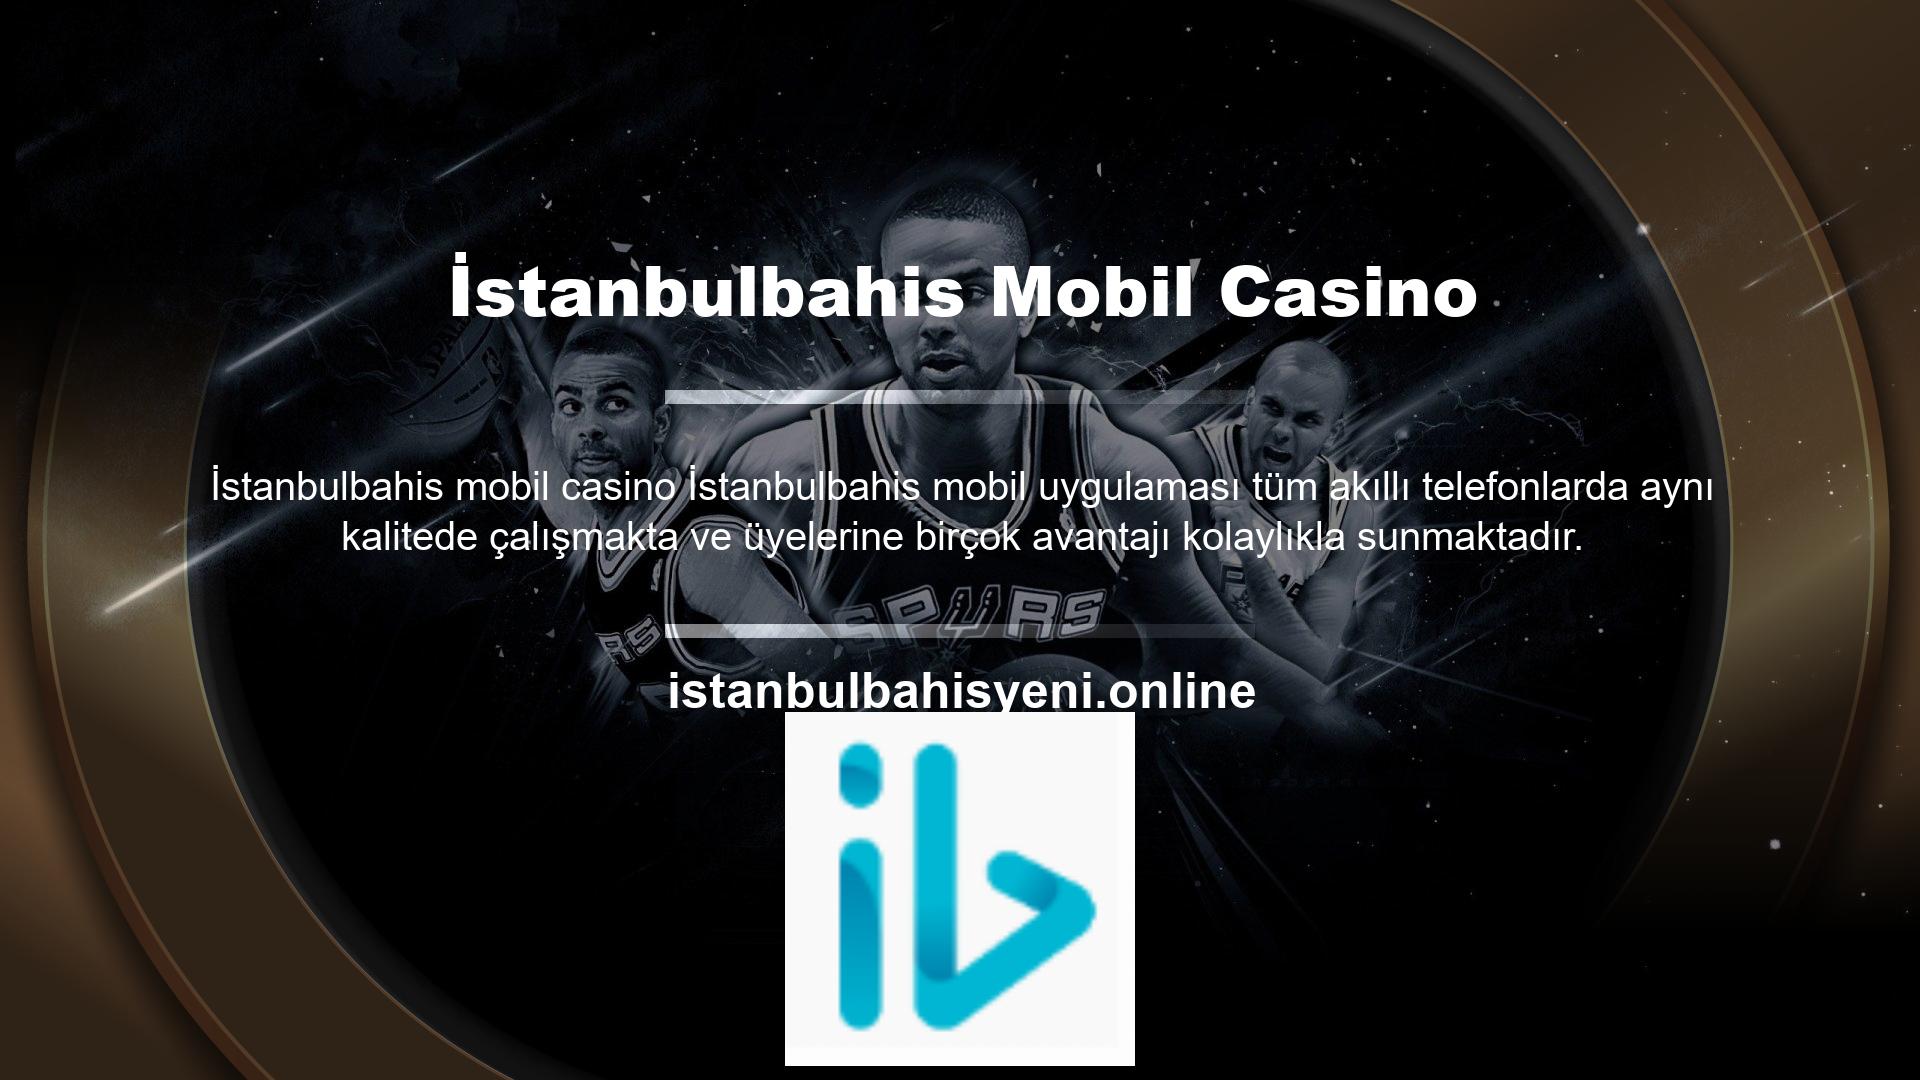 İstanbulbahis telefonları, bilgisayarı olmayan kişilerin bile kolaylıkla kullanabileceği bir telefon olup, adres değişikliği veya elektrik kesintisi gibi durumlarda yatırıma dönüşmektedir